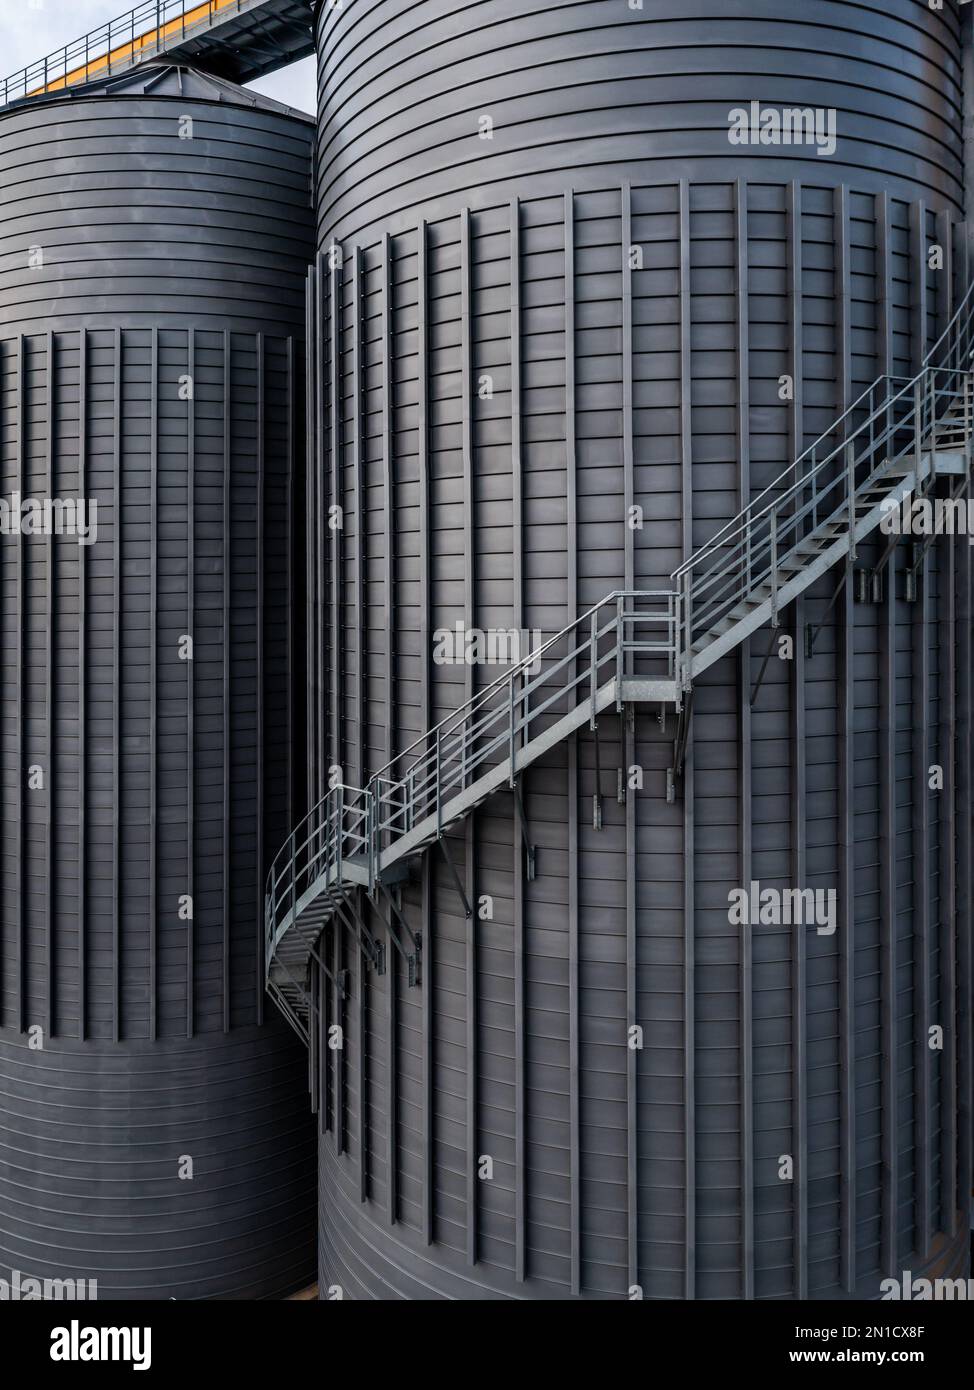 Primo piano di serbatoi industriali o silos di grandi dimensioni nel settore petrolchimico o agricolo con scale a pioli esterne per l'accesso con spac copia Foto Stock